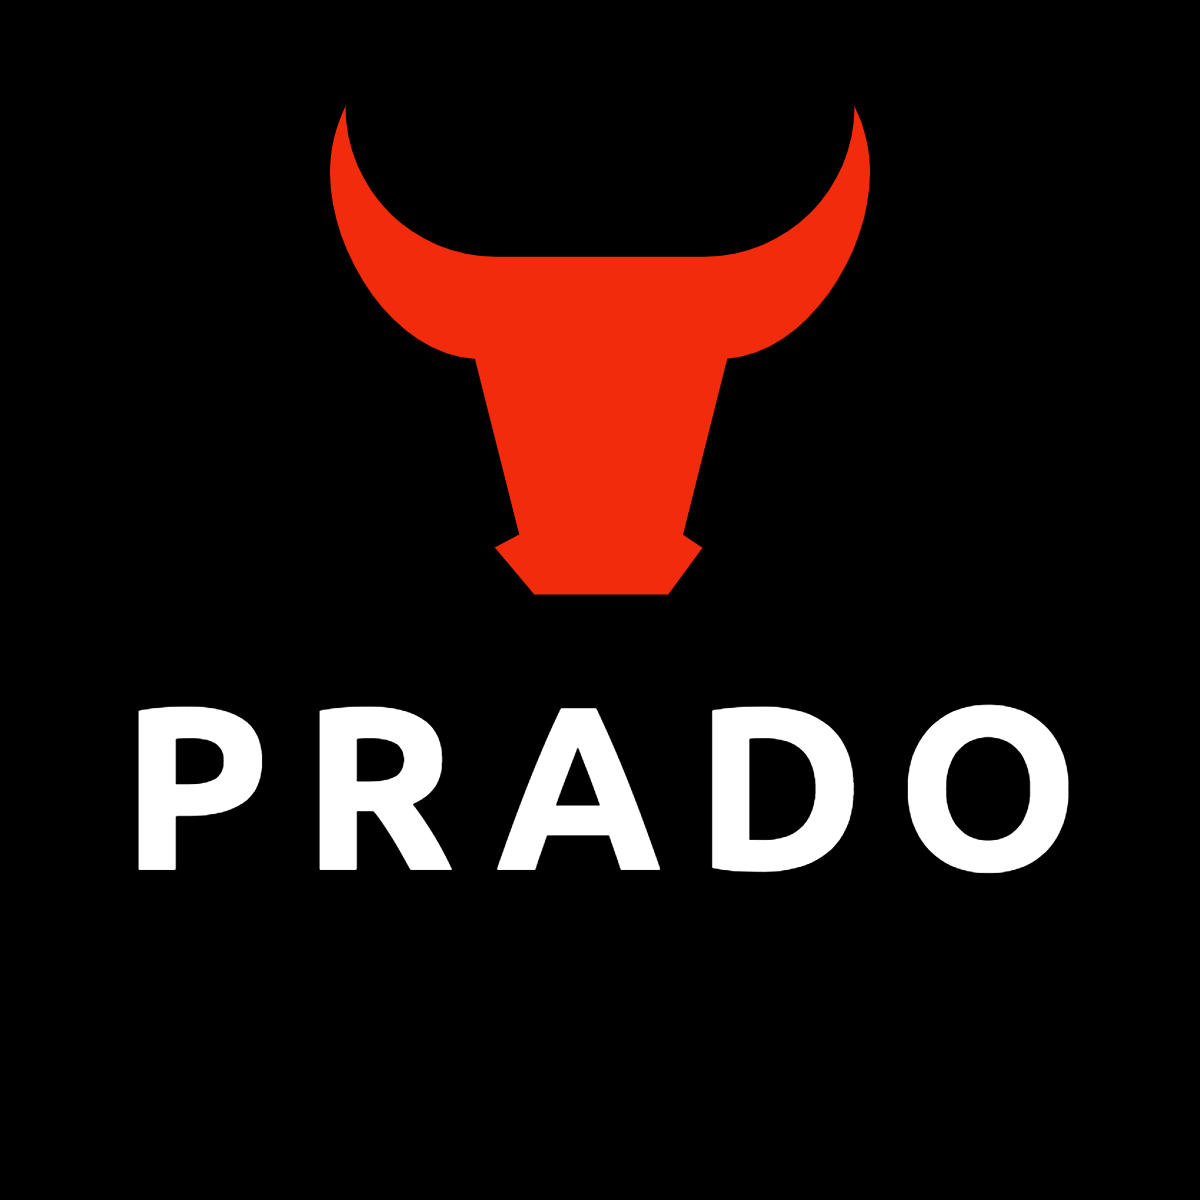 webdesign_prado_logo